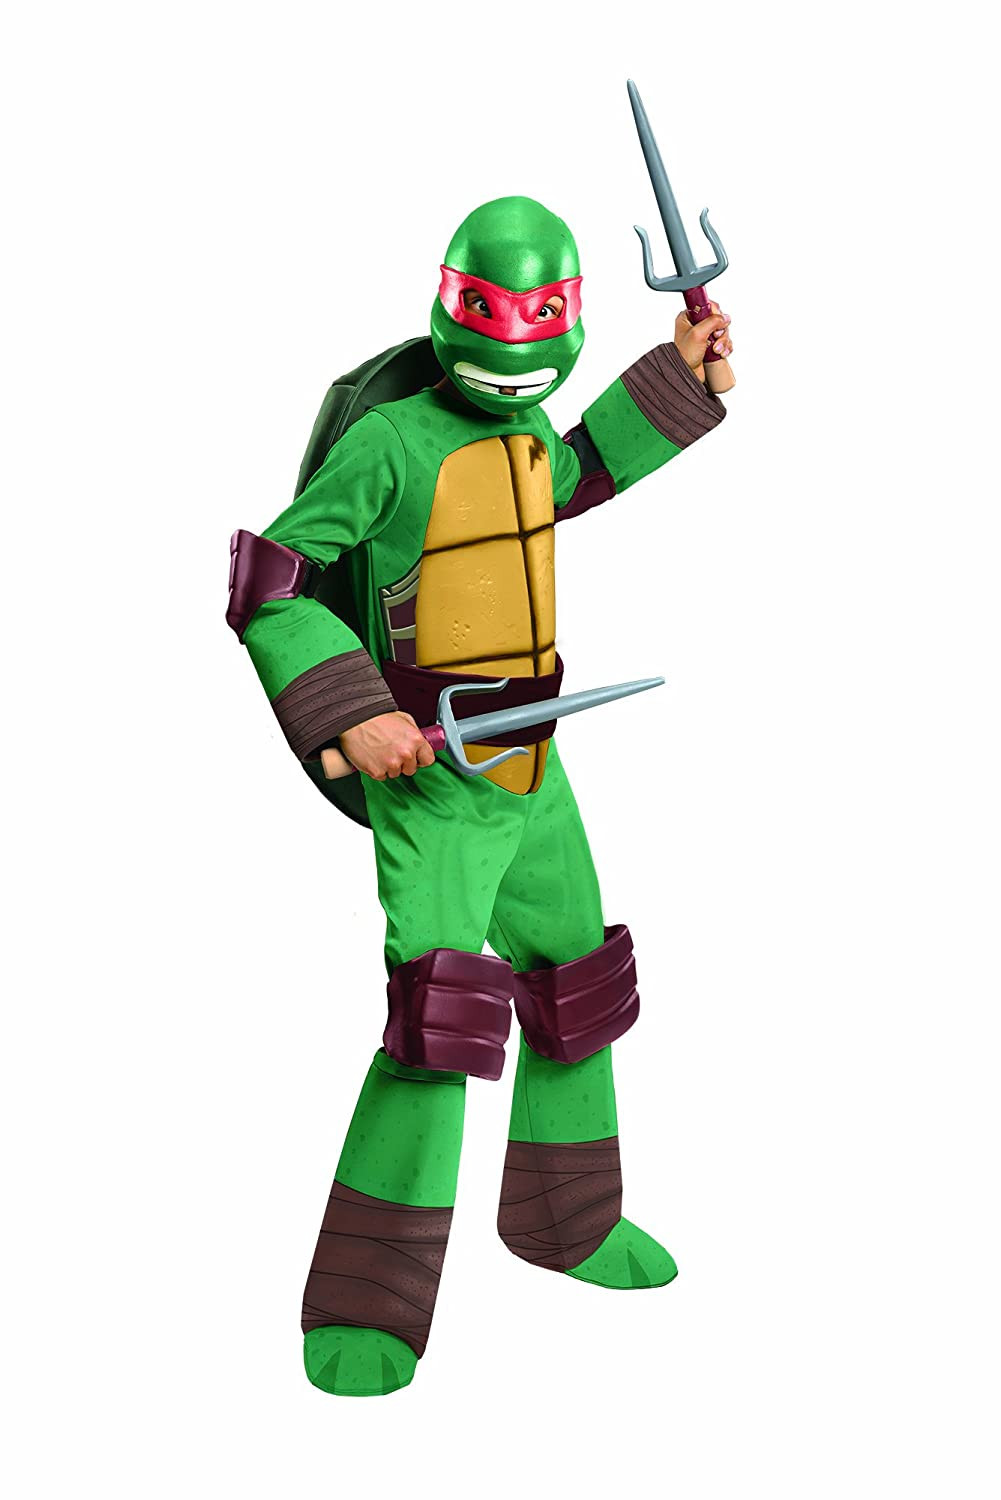 DIY Teenage Mutant Ninja Turtle Costumes
 Teenage Mutant Ninja Turtles Costumes Nest Full of New